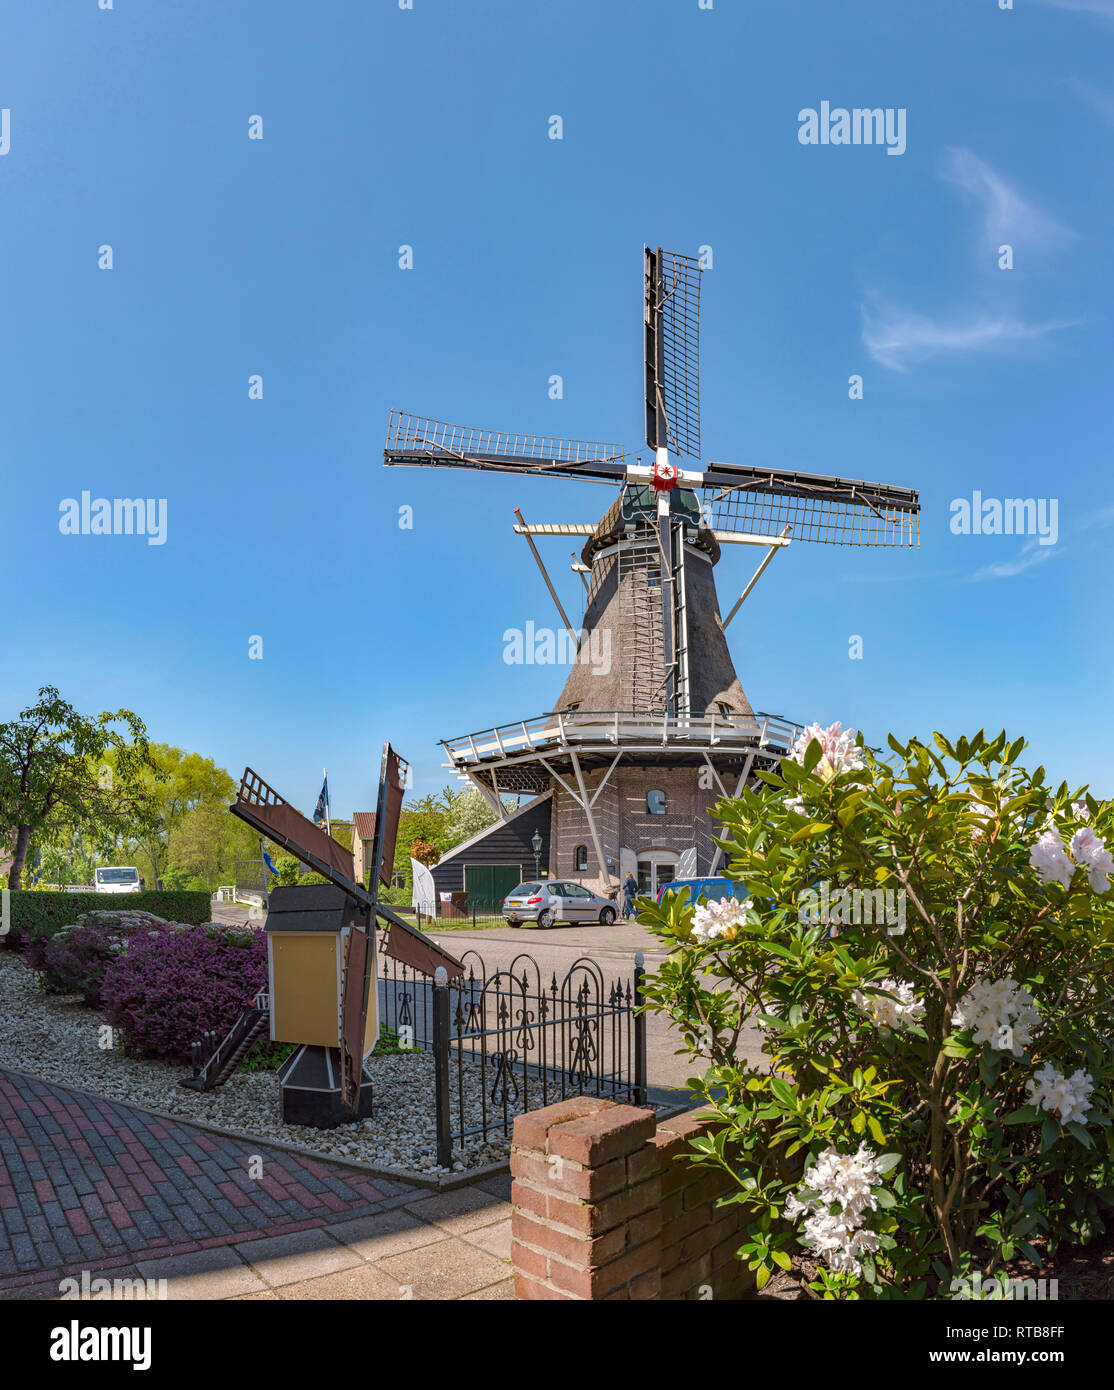 Moulin appelé De Weert avec un modèle-moulin dans un jardin de devant Banque D'Images